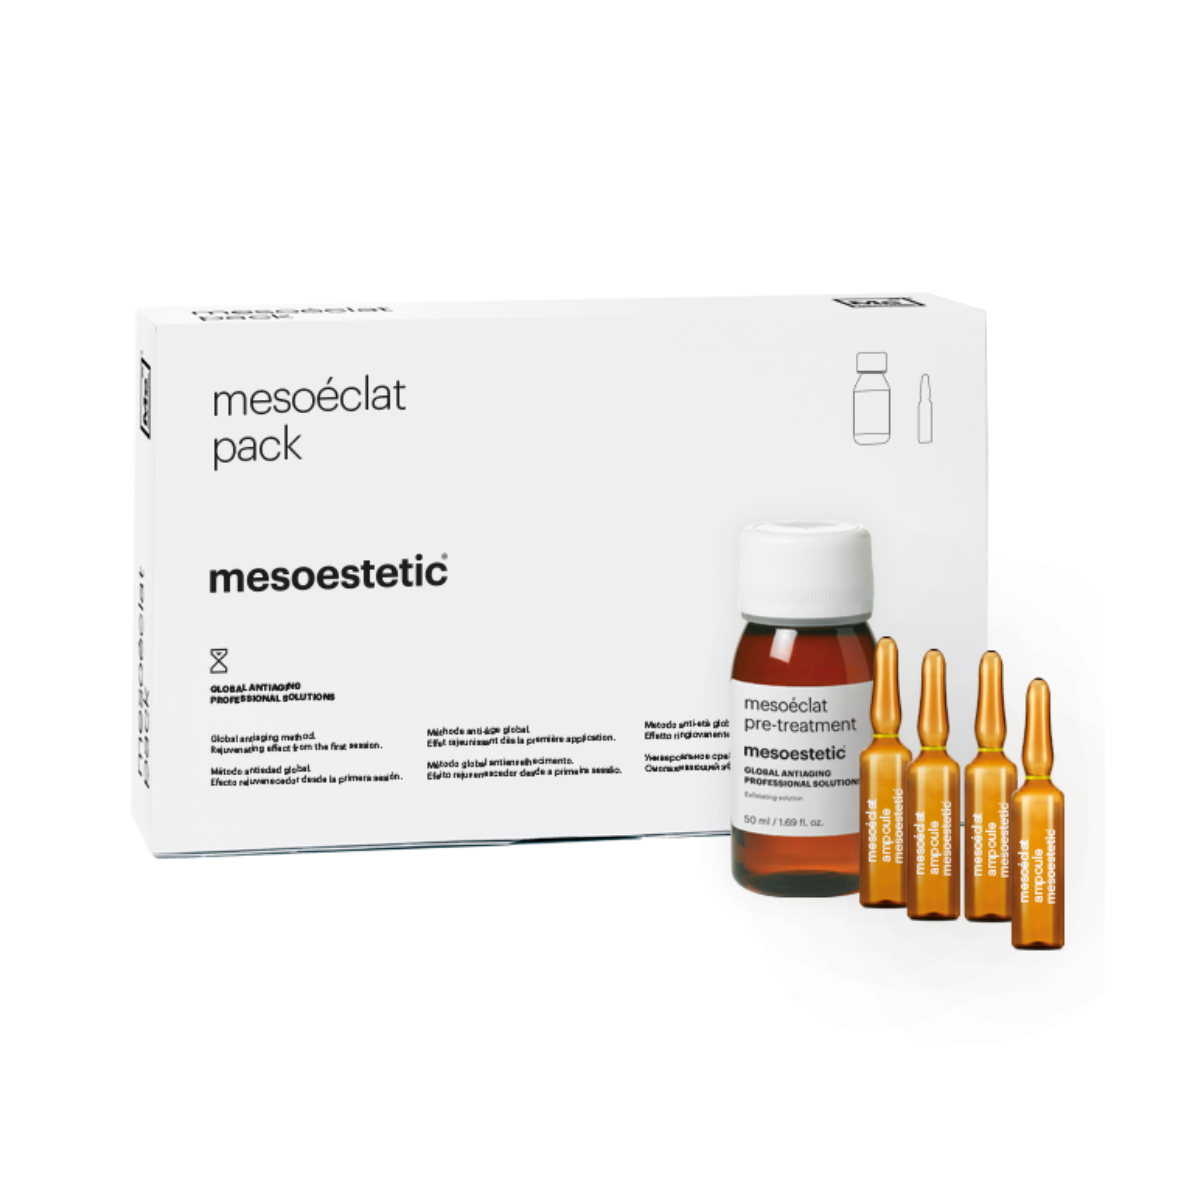 Mesoéclat® professionaalne hooldus kohese toimega noorendamiseks mesoéclat®